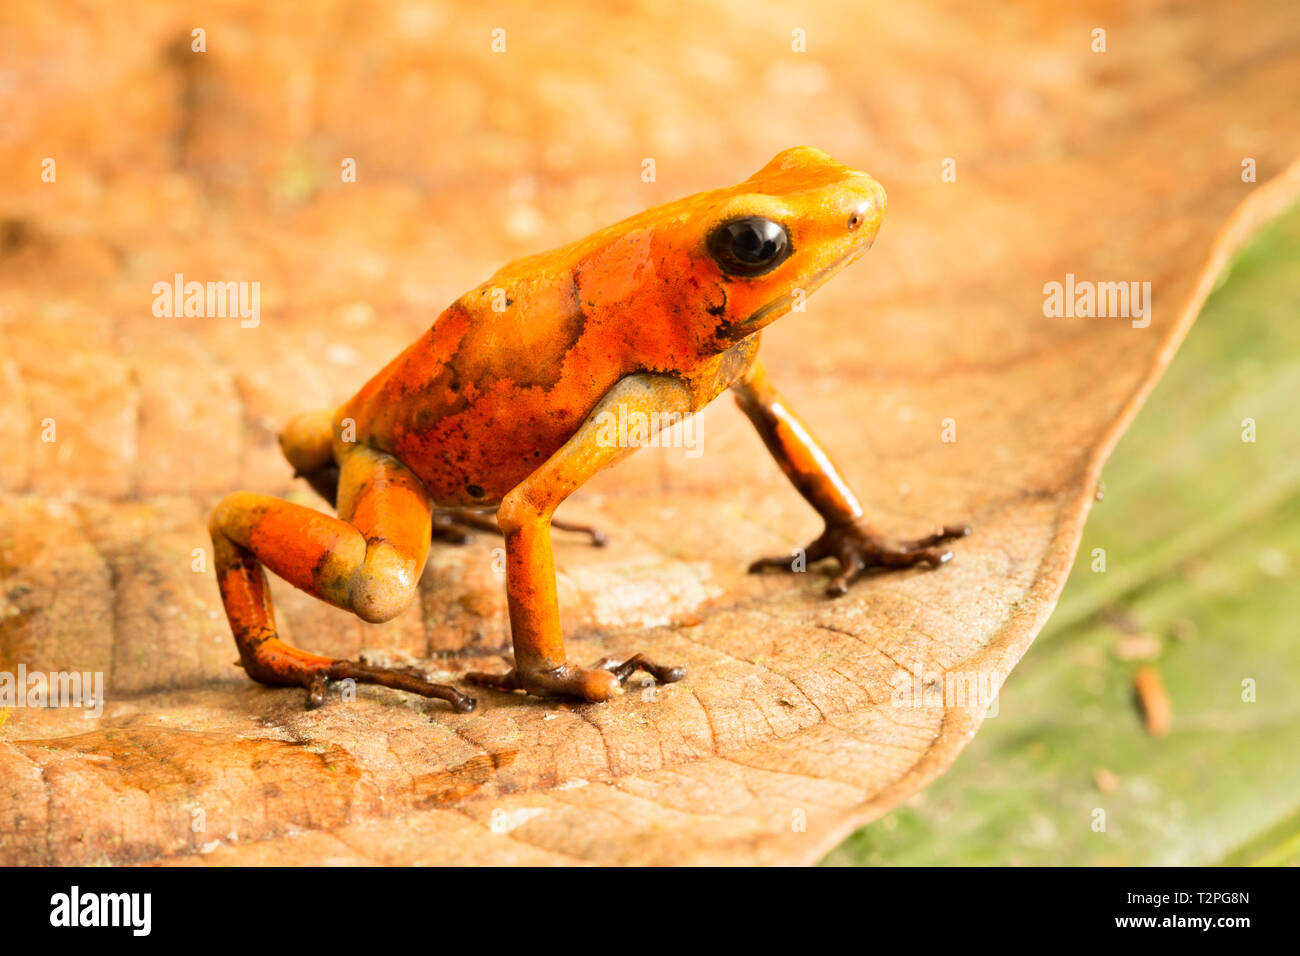 Poison dart frog, Oophaga histrionica. Un pequeño animal venenoso del bosque lluvioso de Colombia. Foto de stock